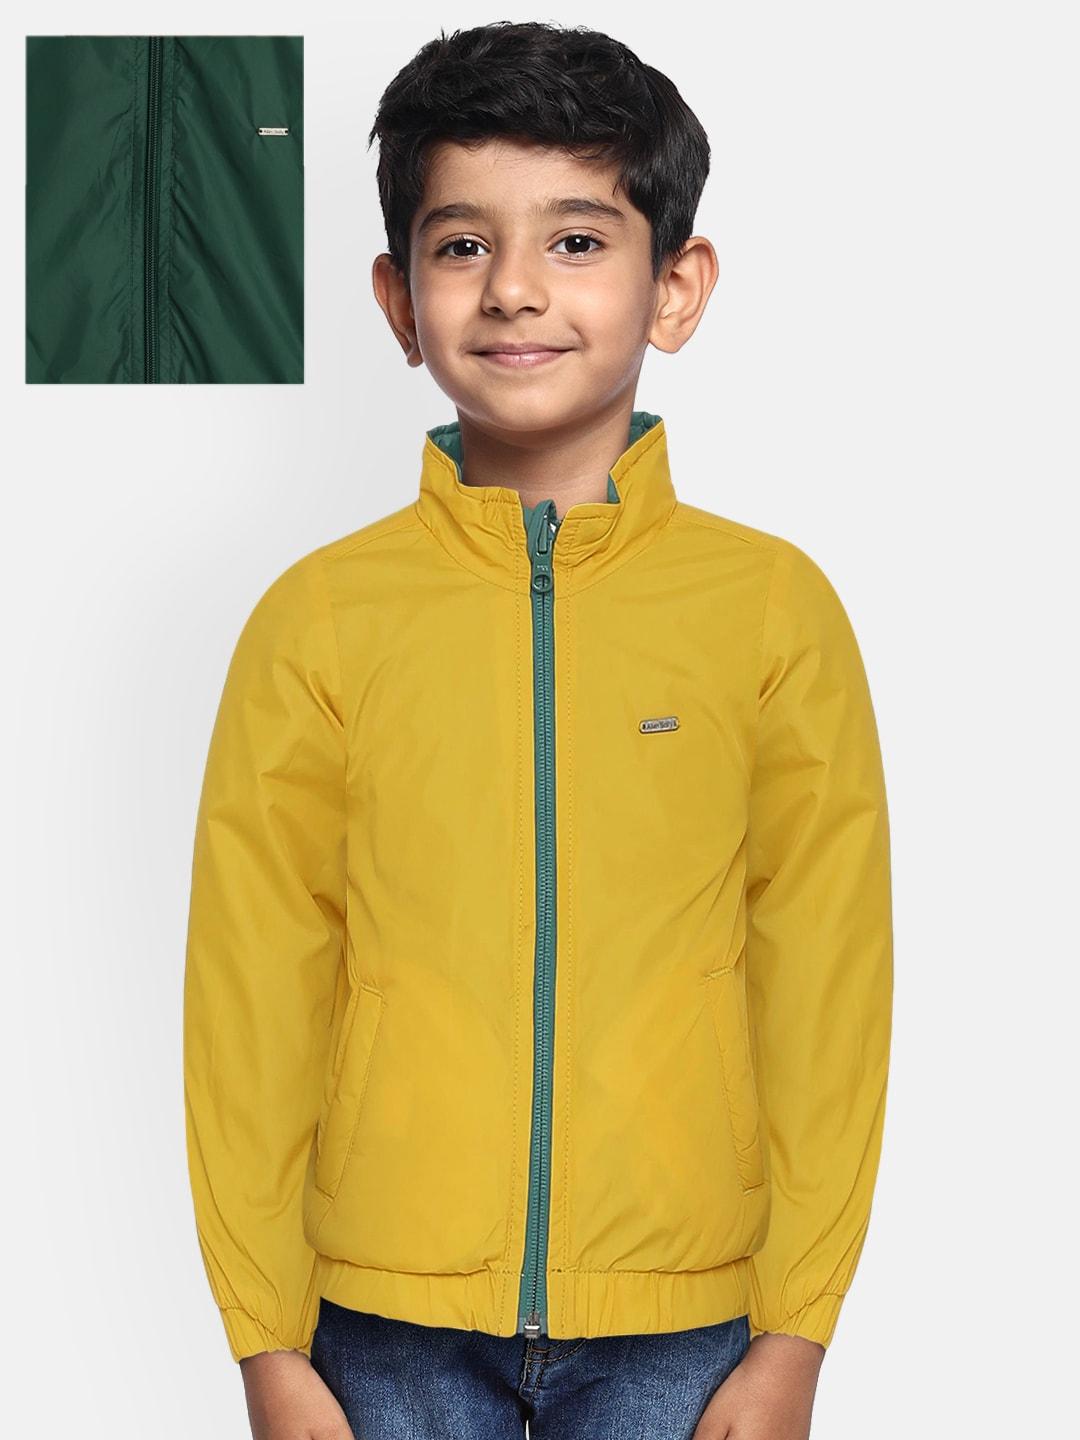 allen solly junior boys green solid reversible open front jacket